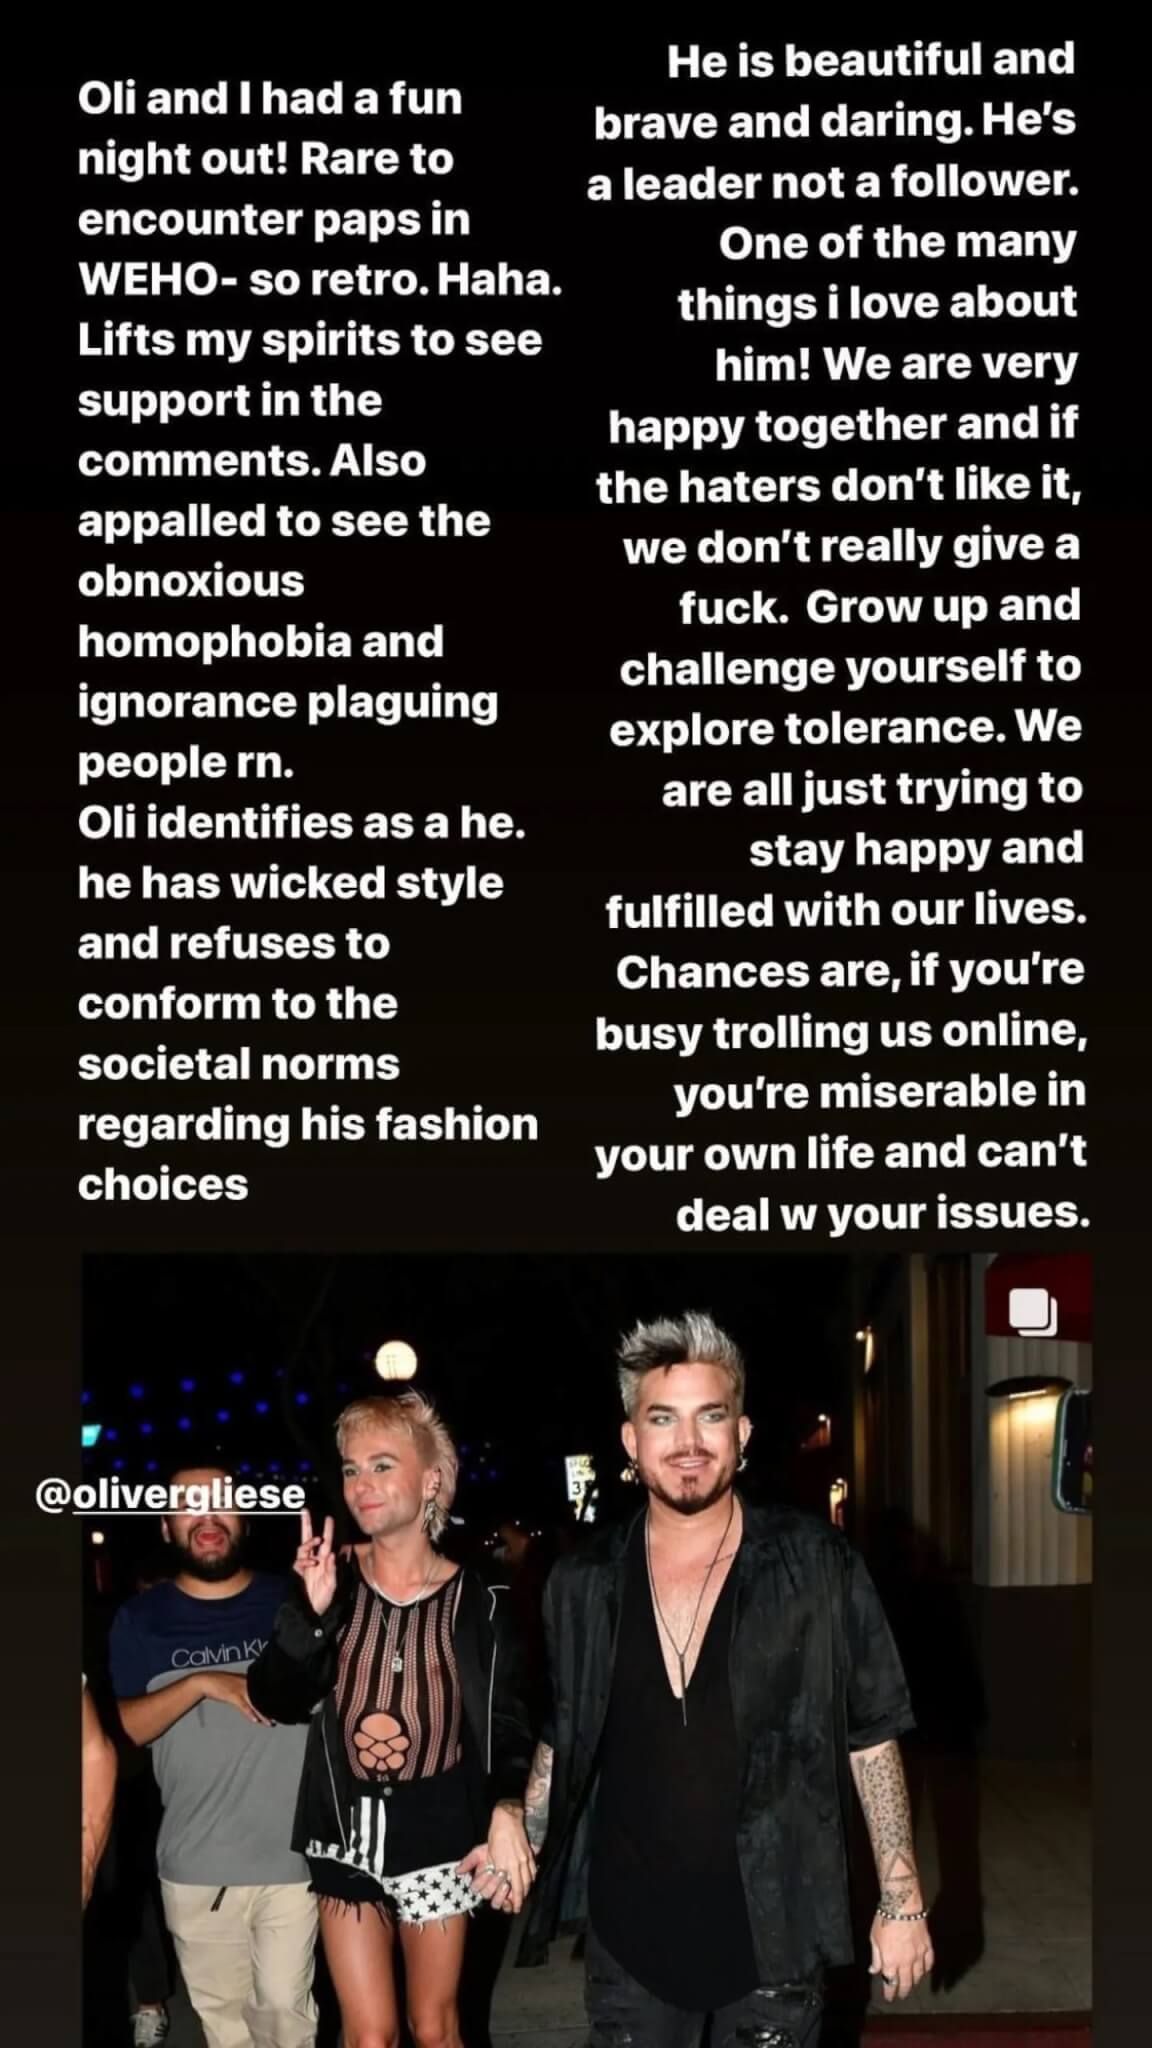 Adam Lambert difende il fidanzato Oliver Gliese dagli indecenti commenti omofobi - Oliver Gliese scaled - Gay.it